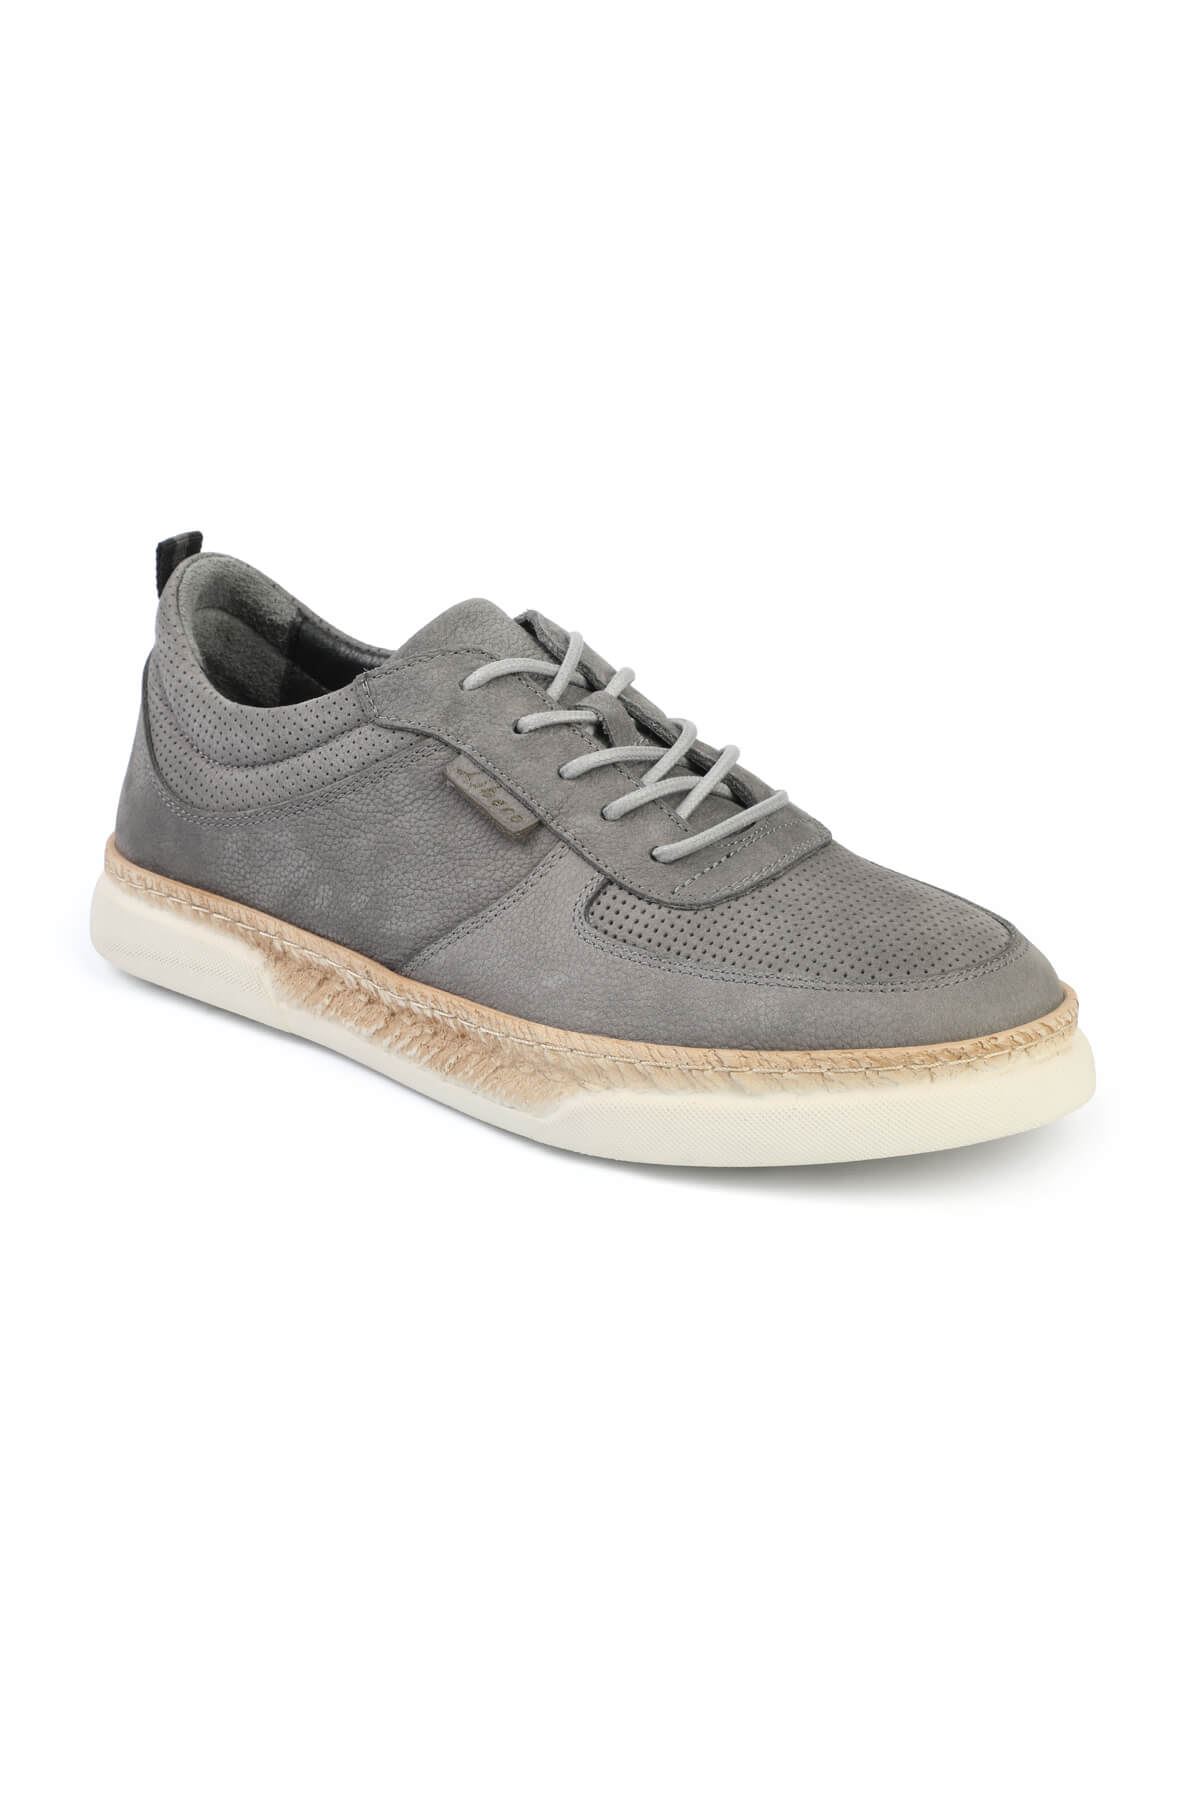 Libero 3007 Gray Casual Shoes